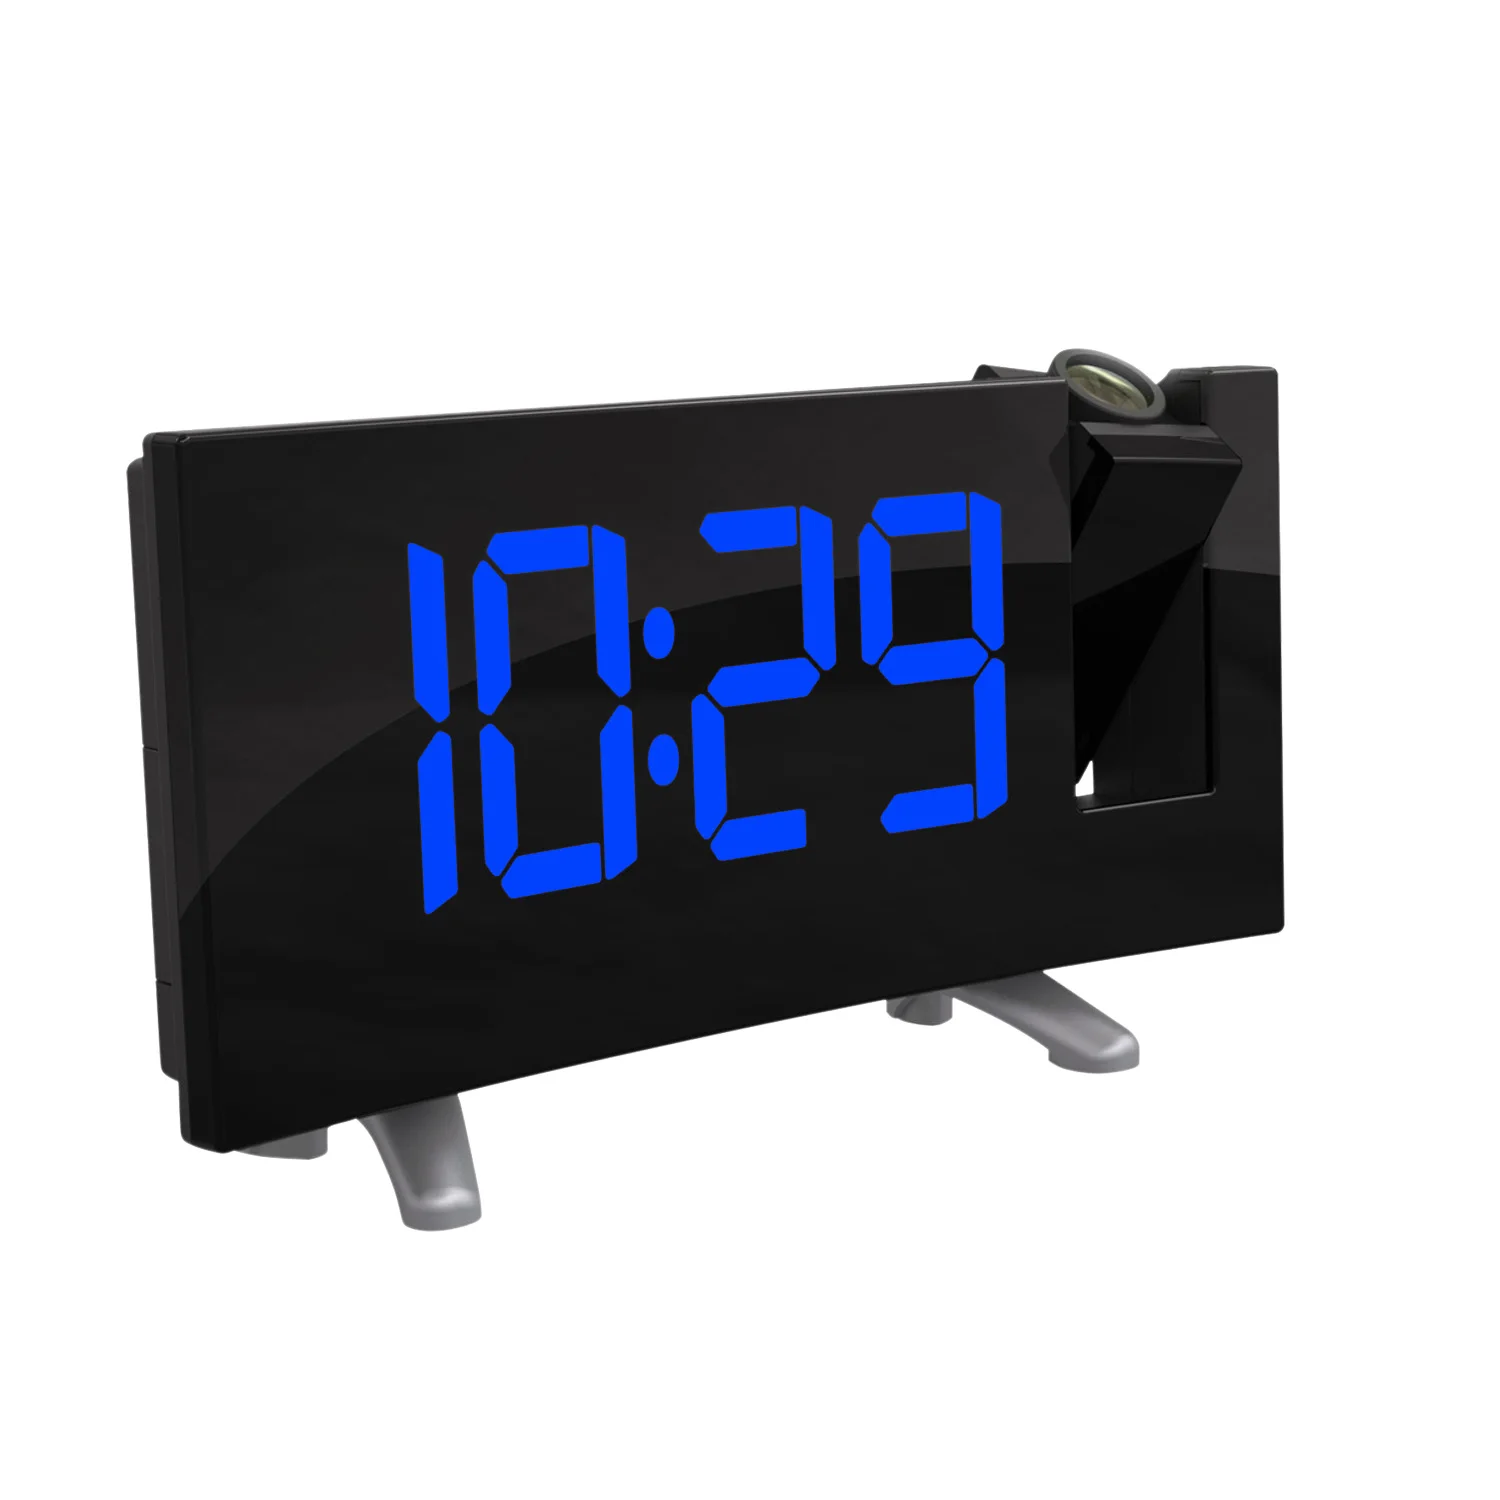 Цифровой радиоприемник с проектором будильник часы с режимом включения по таймеру таймер светодиодный Дисплей широкий изогнутый Экран USB зарядка 180 градусов стола наклейки на стену fm-радио, часы